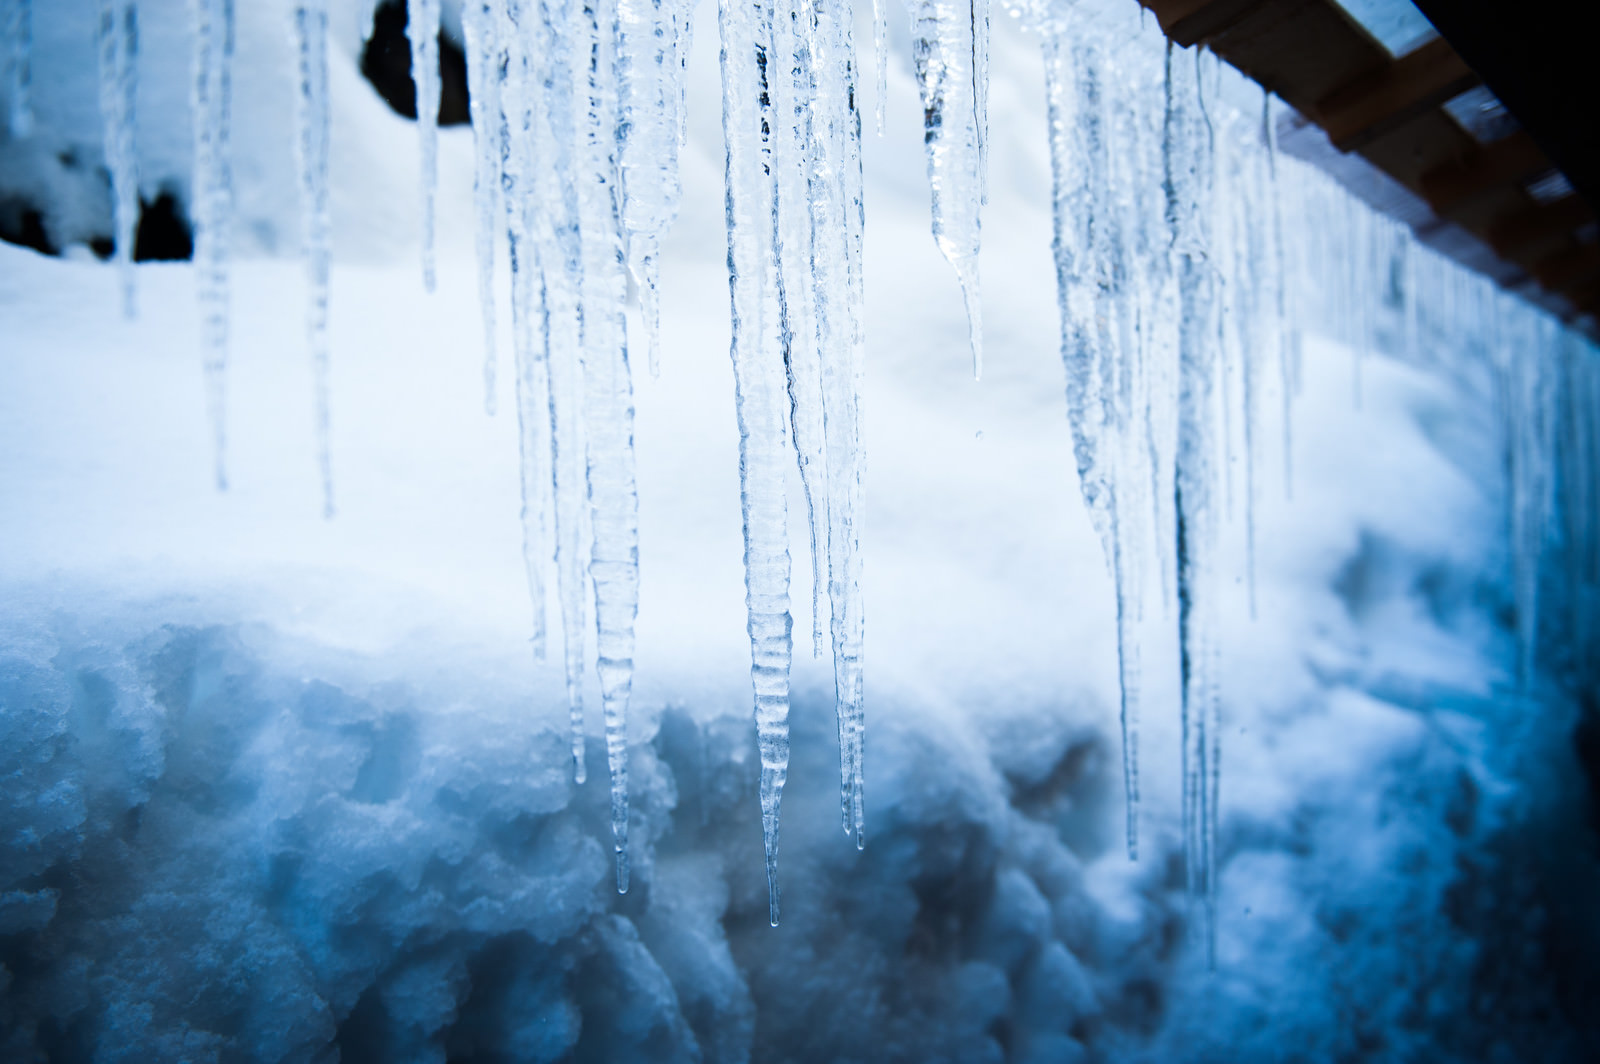 「軒下に付いた氷柱 | フリー素材のぱくたそ」の写真